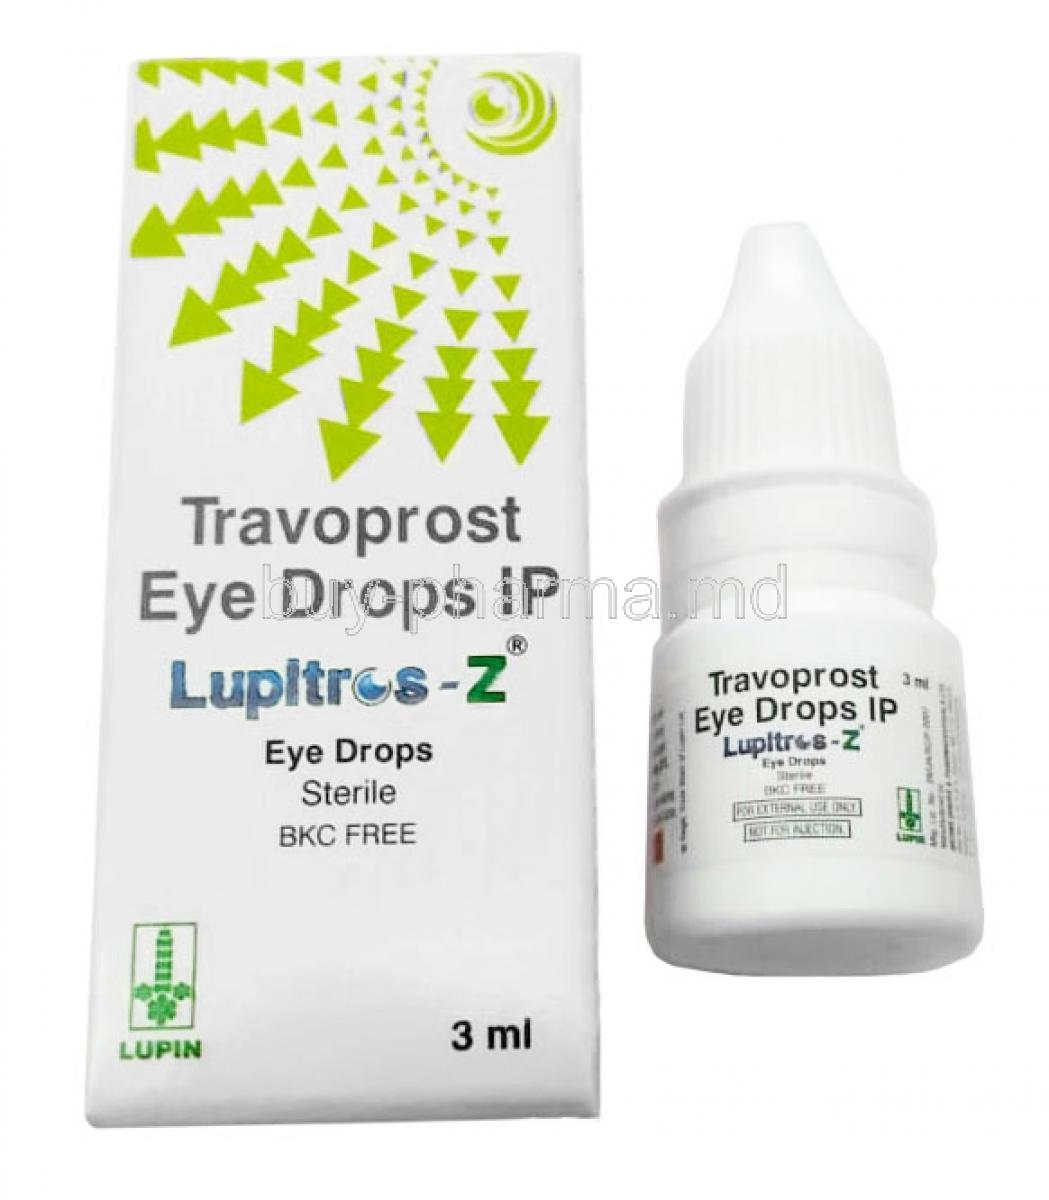 Lupitros-Z Eye Drops, Travoprost 0.004% wv, Eye Drops 3mL, Lupin, Box, Bottle